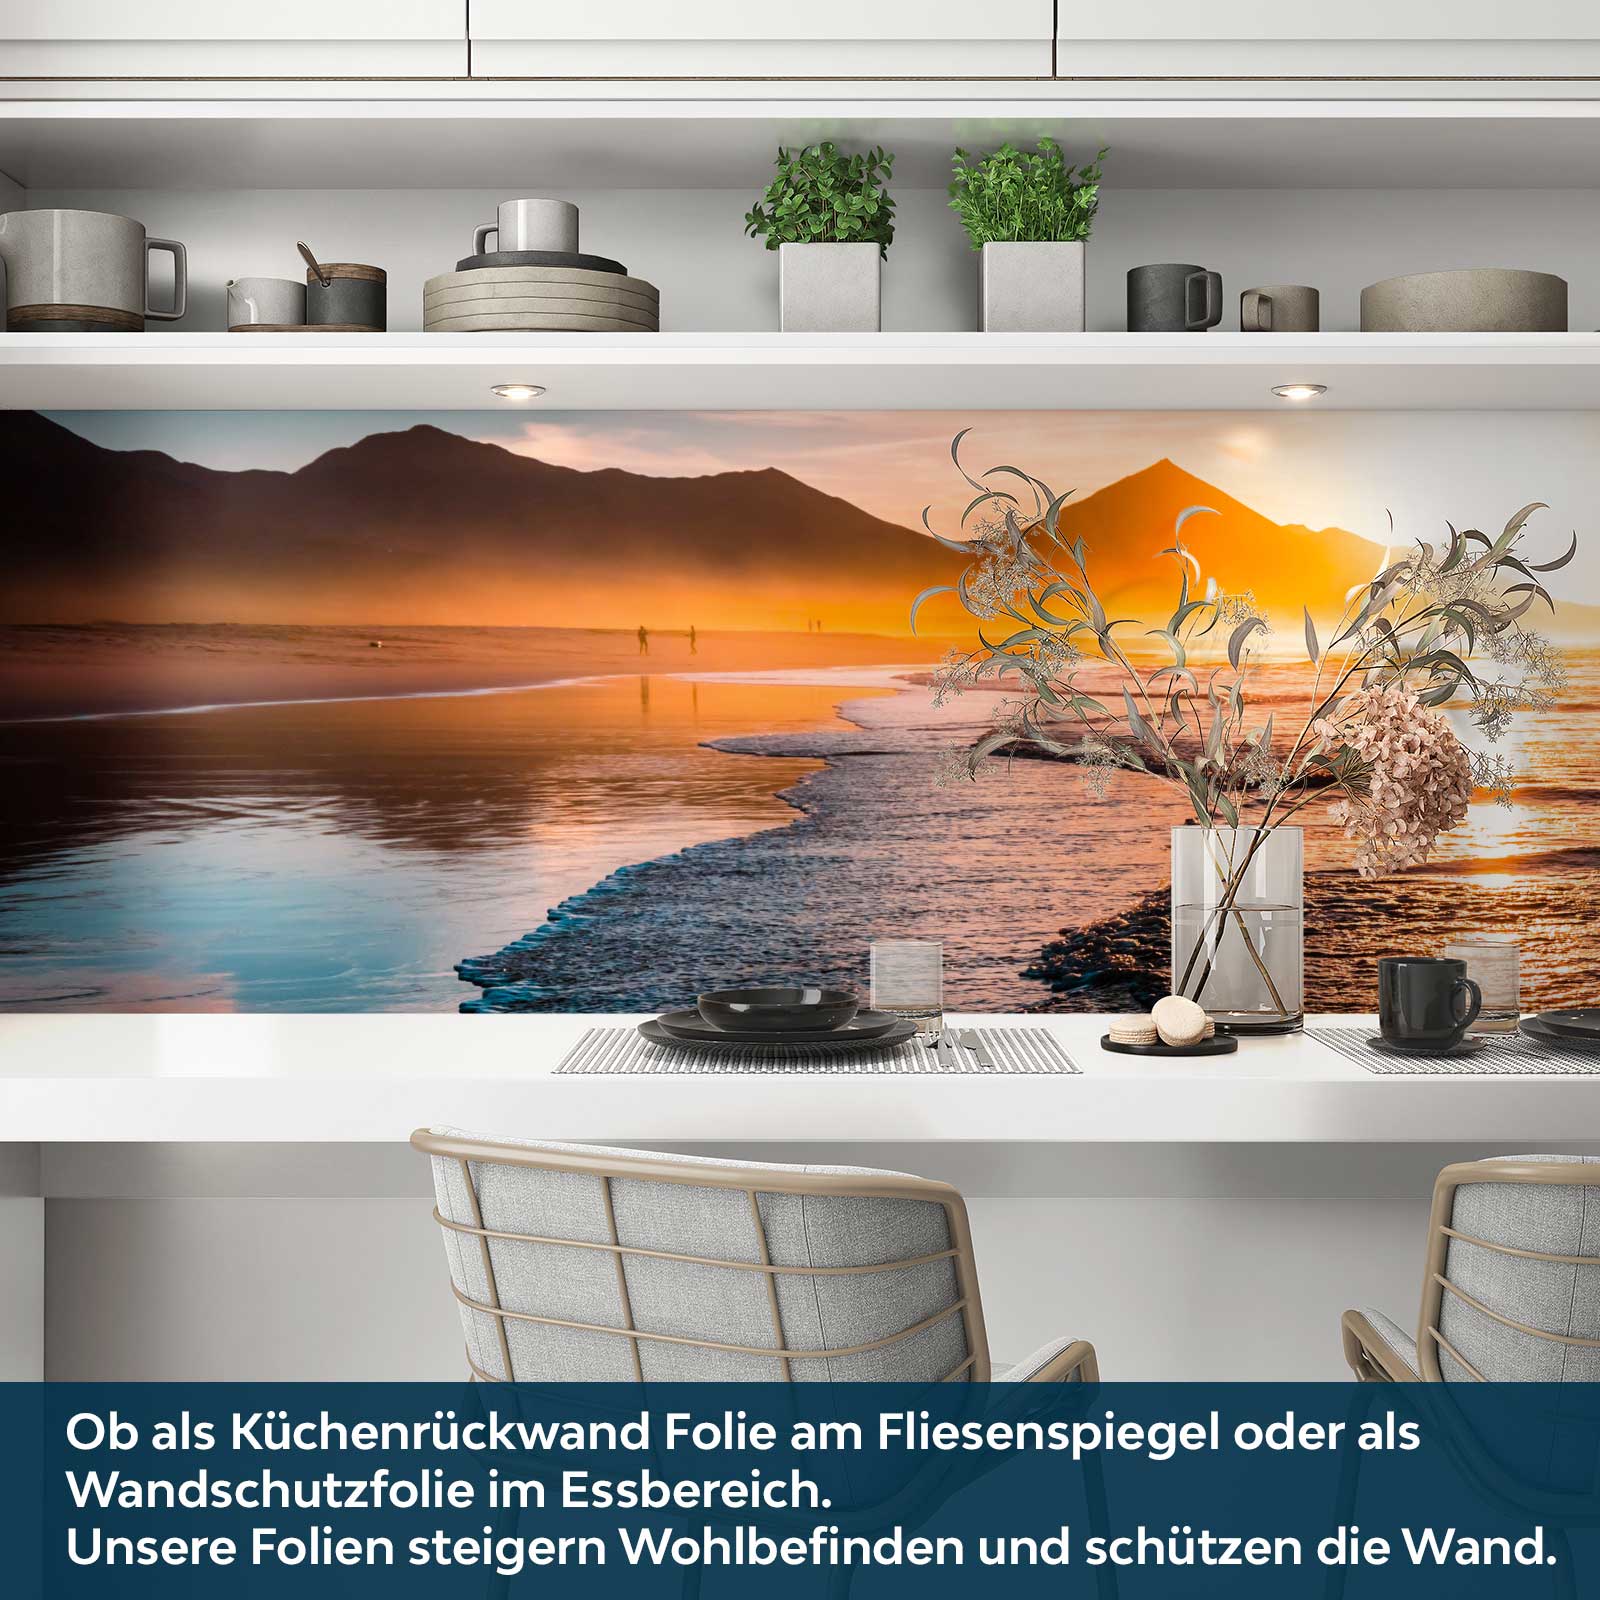 https://www.folien21.de/images/product_images/original_images/kuechenrueckwand-folie/landschaften/148/kuechenrueckwand-folie-selbstklebend-endloser-horizont-a3.jpg